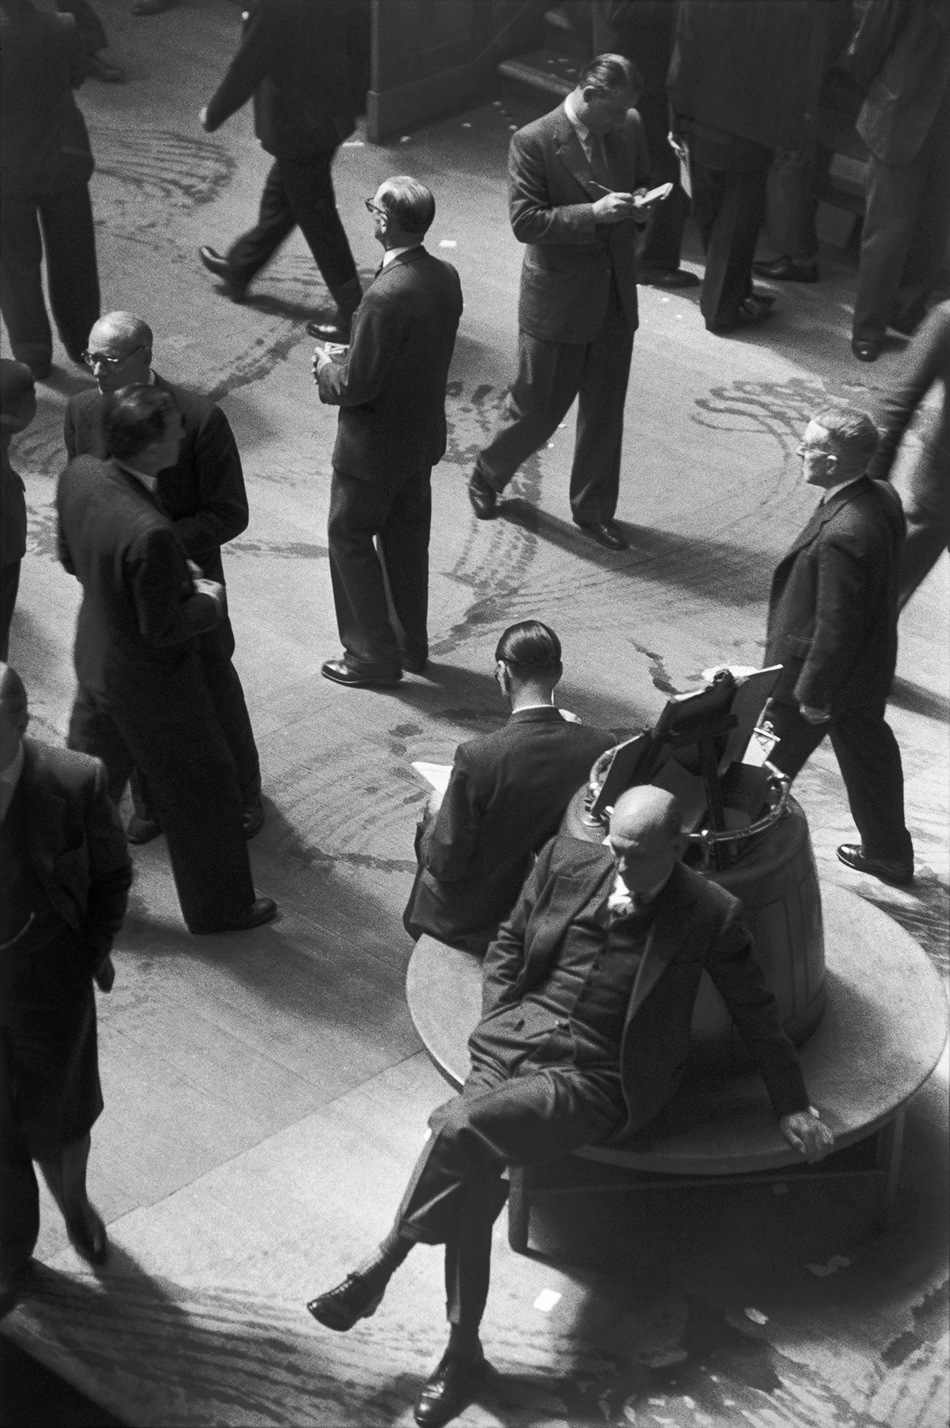 The London Stock Exchange, 1955